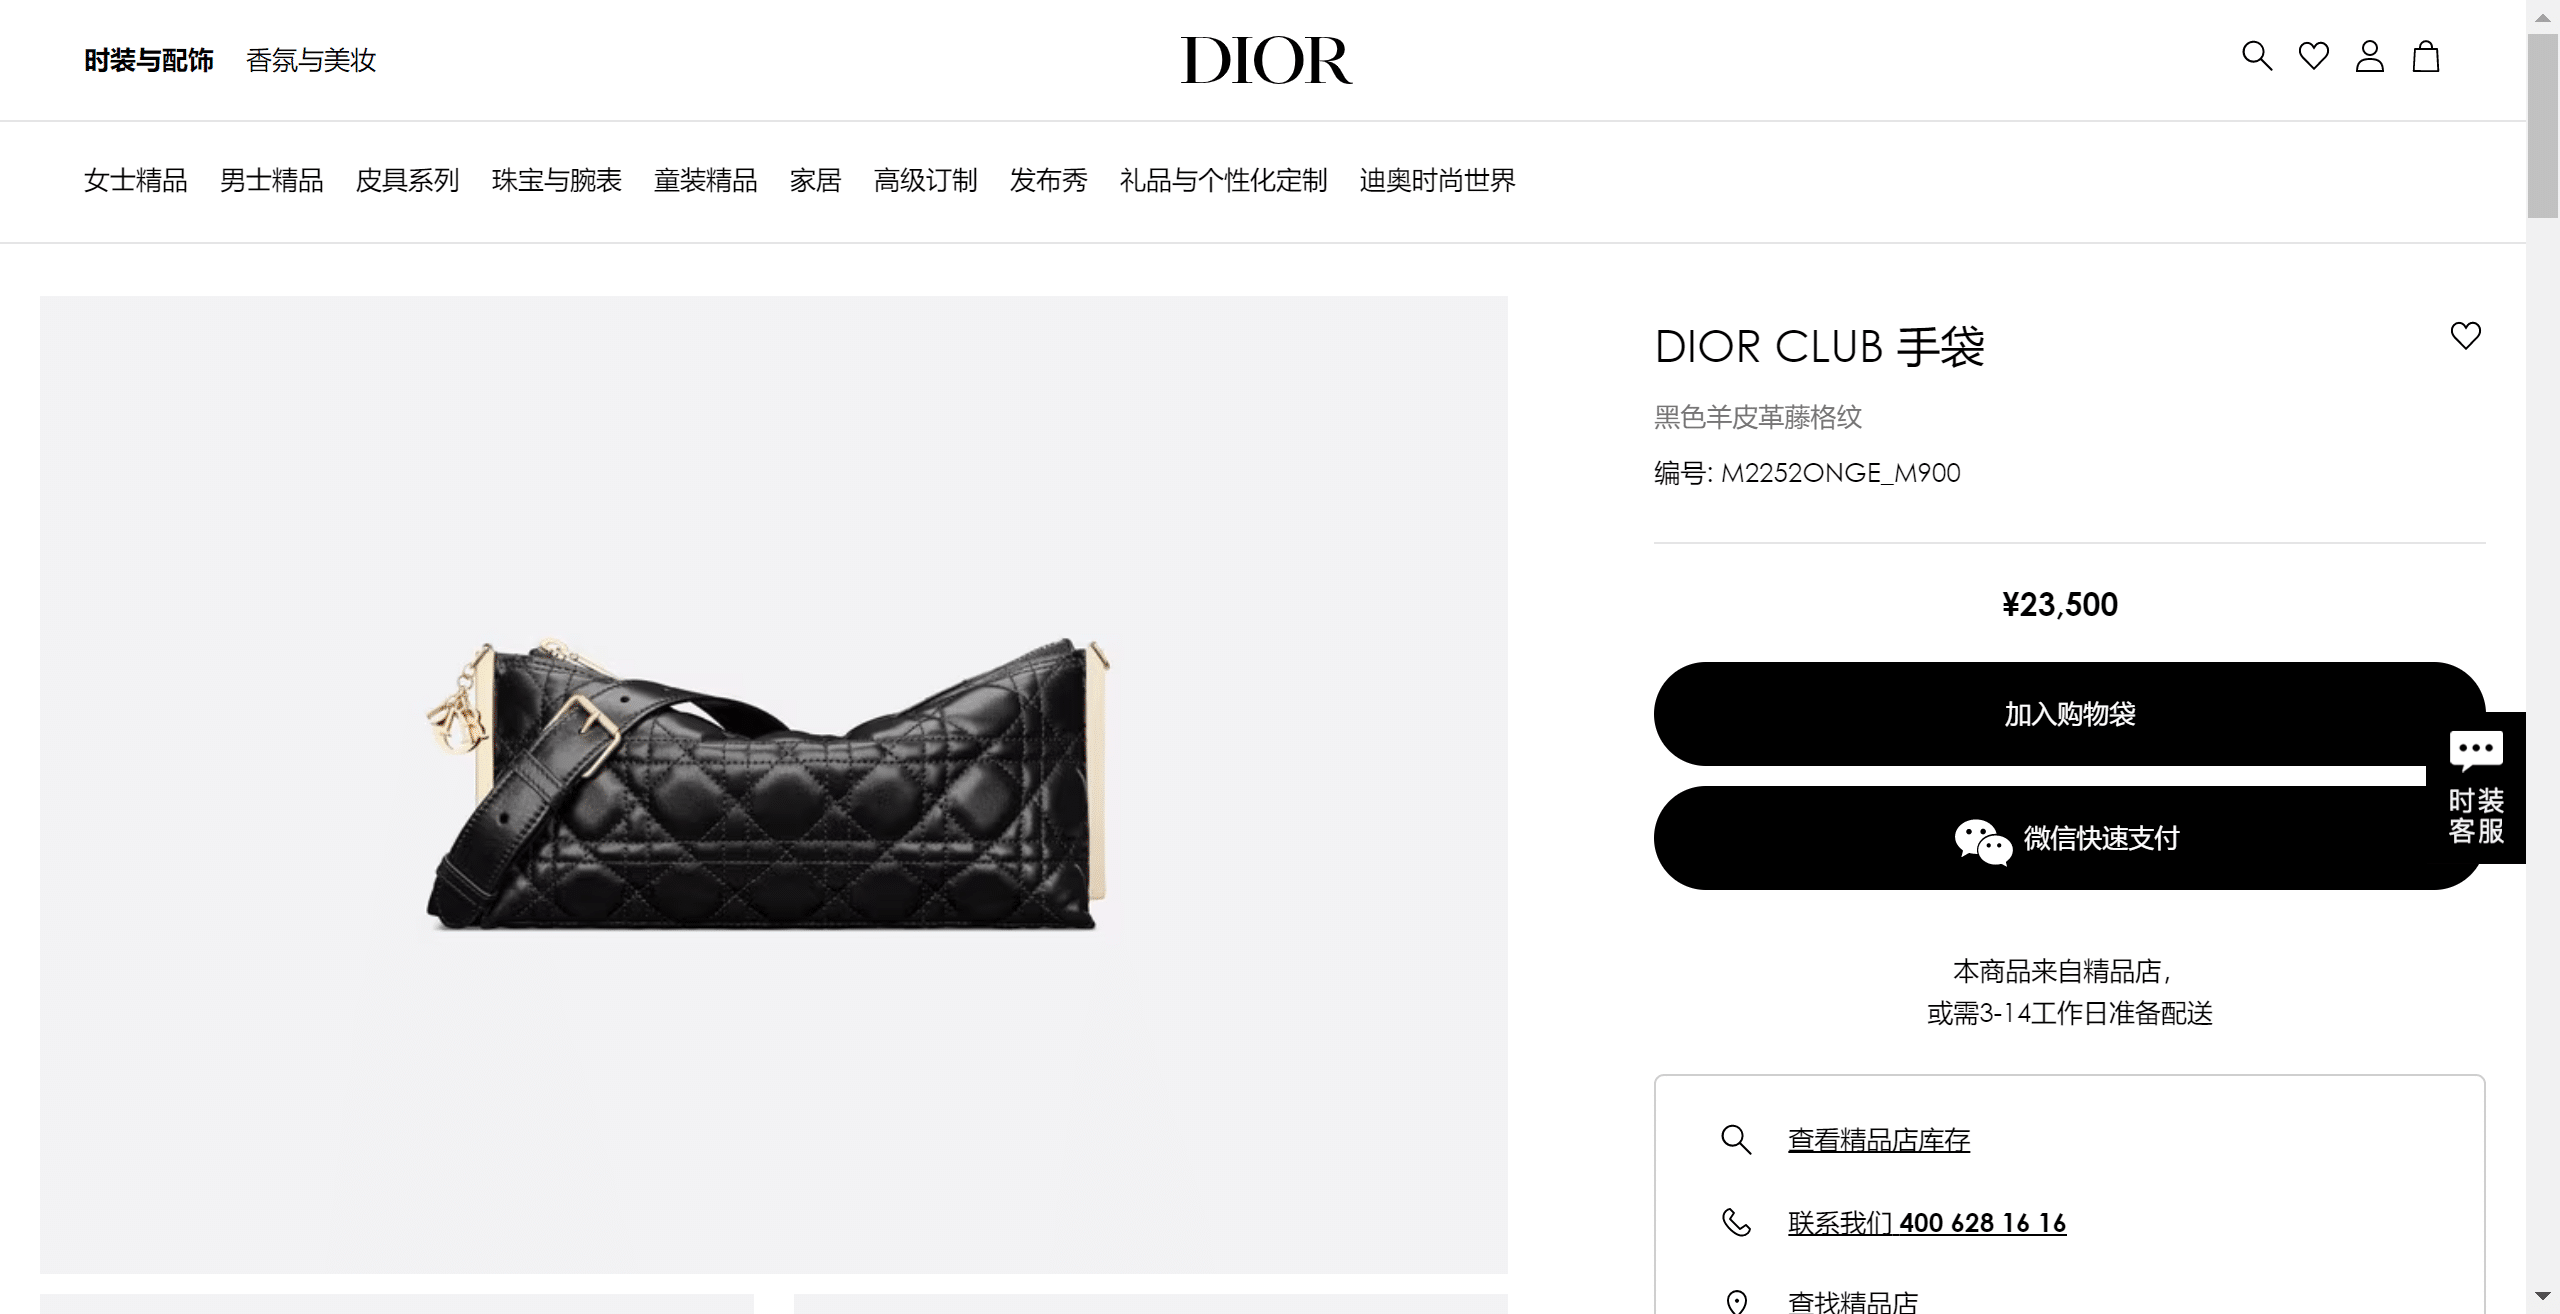 Dior-Club---DIOR.png